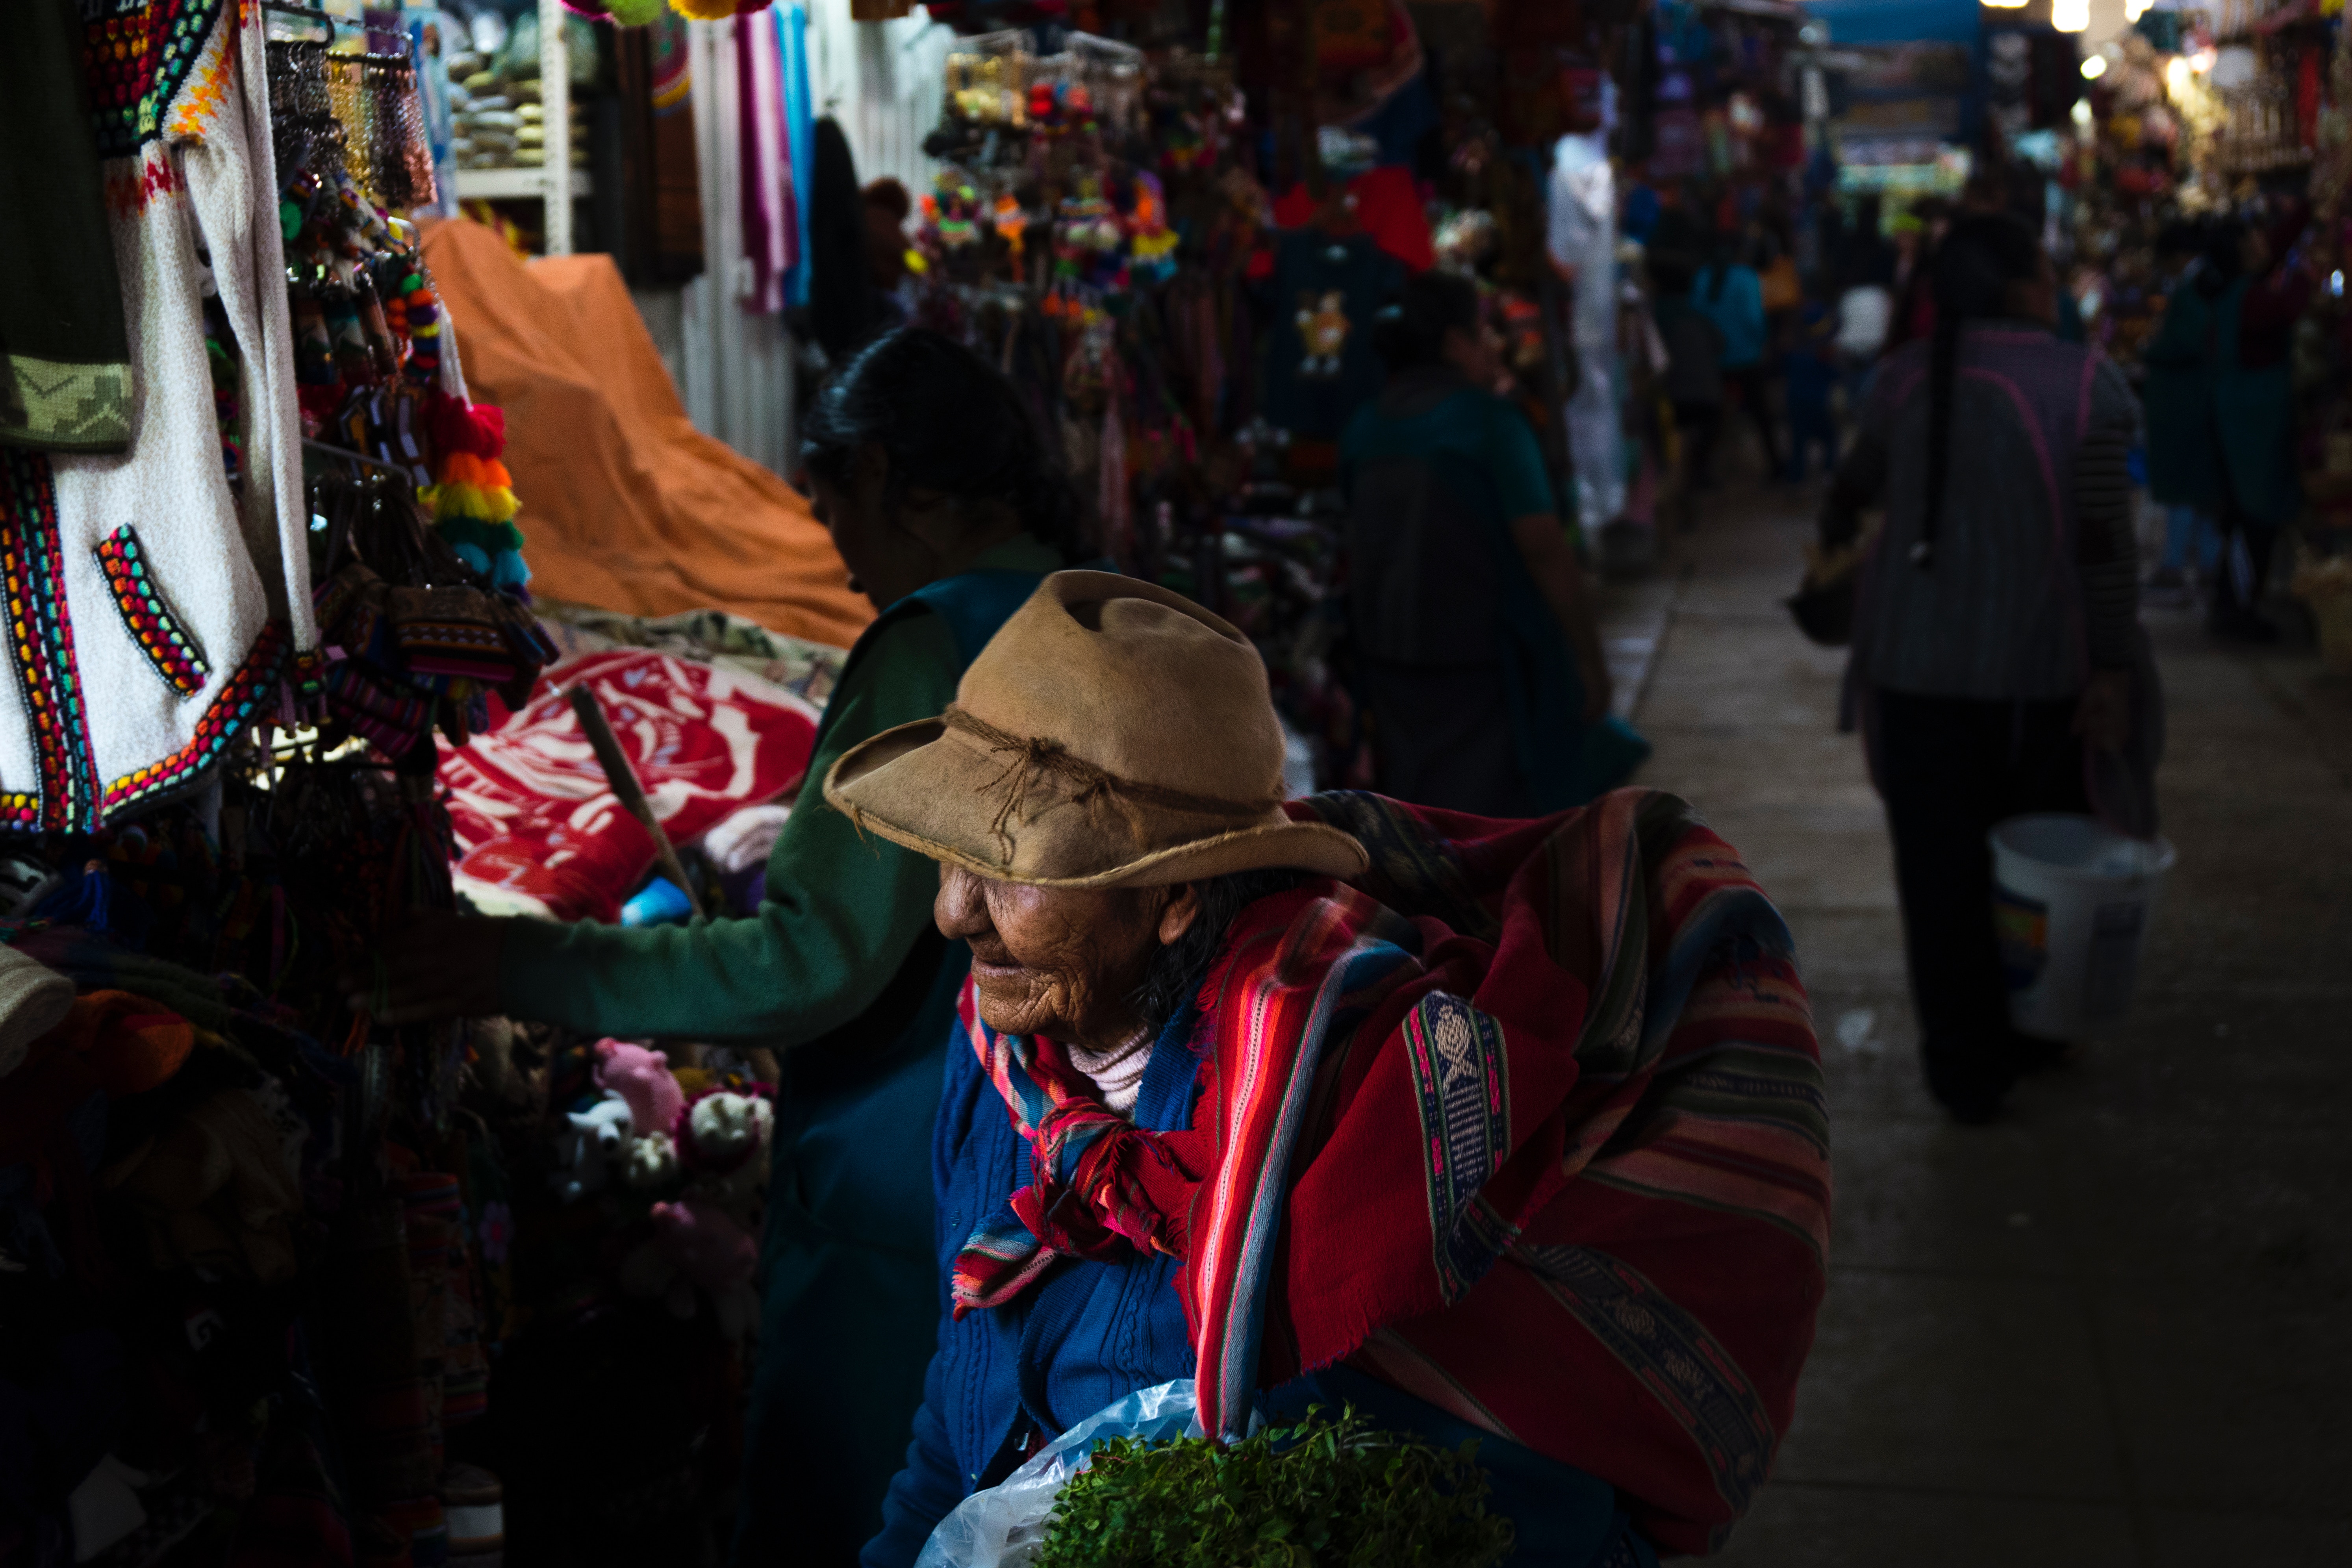 Las calles de Cusco
Photo by Willian Justen de Vasconcellos 